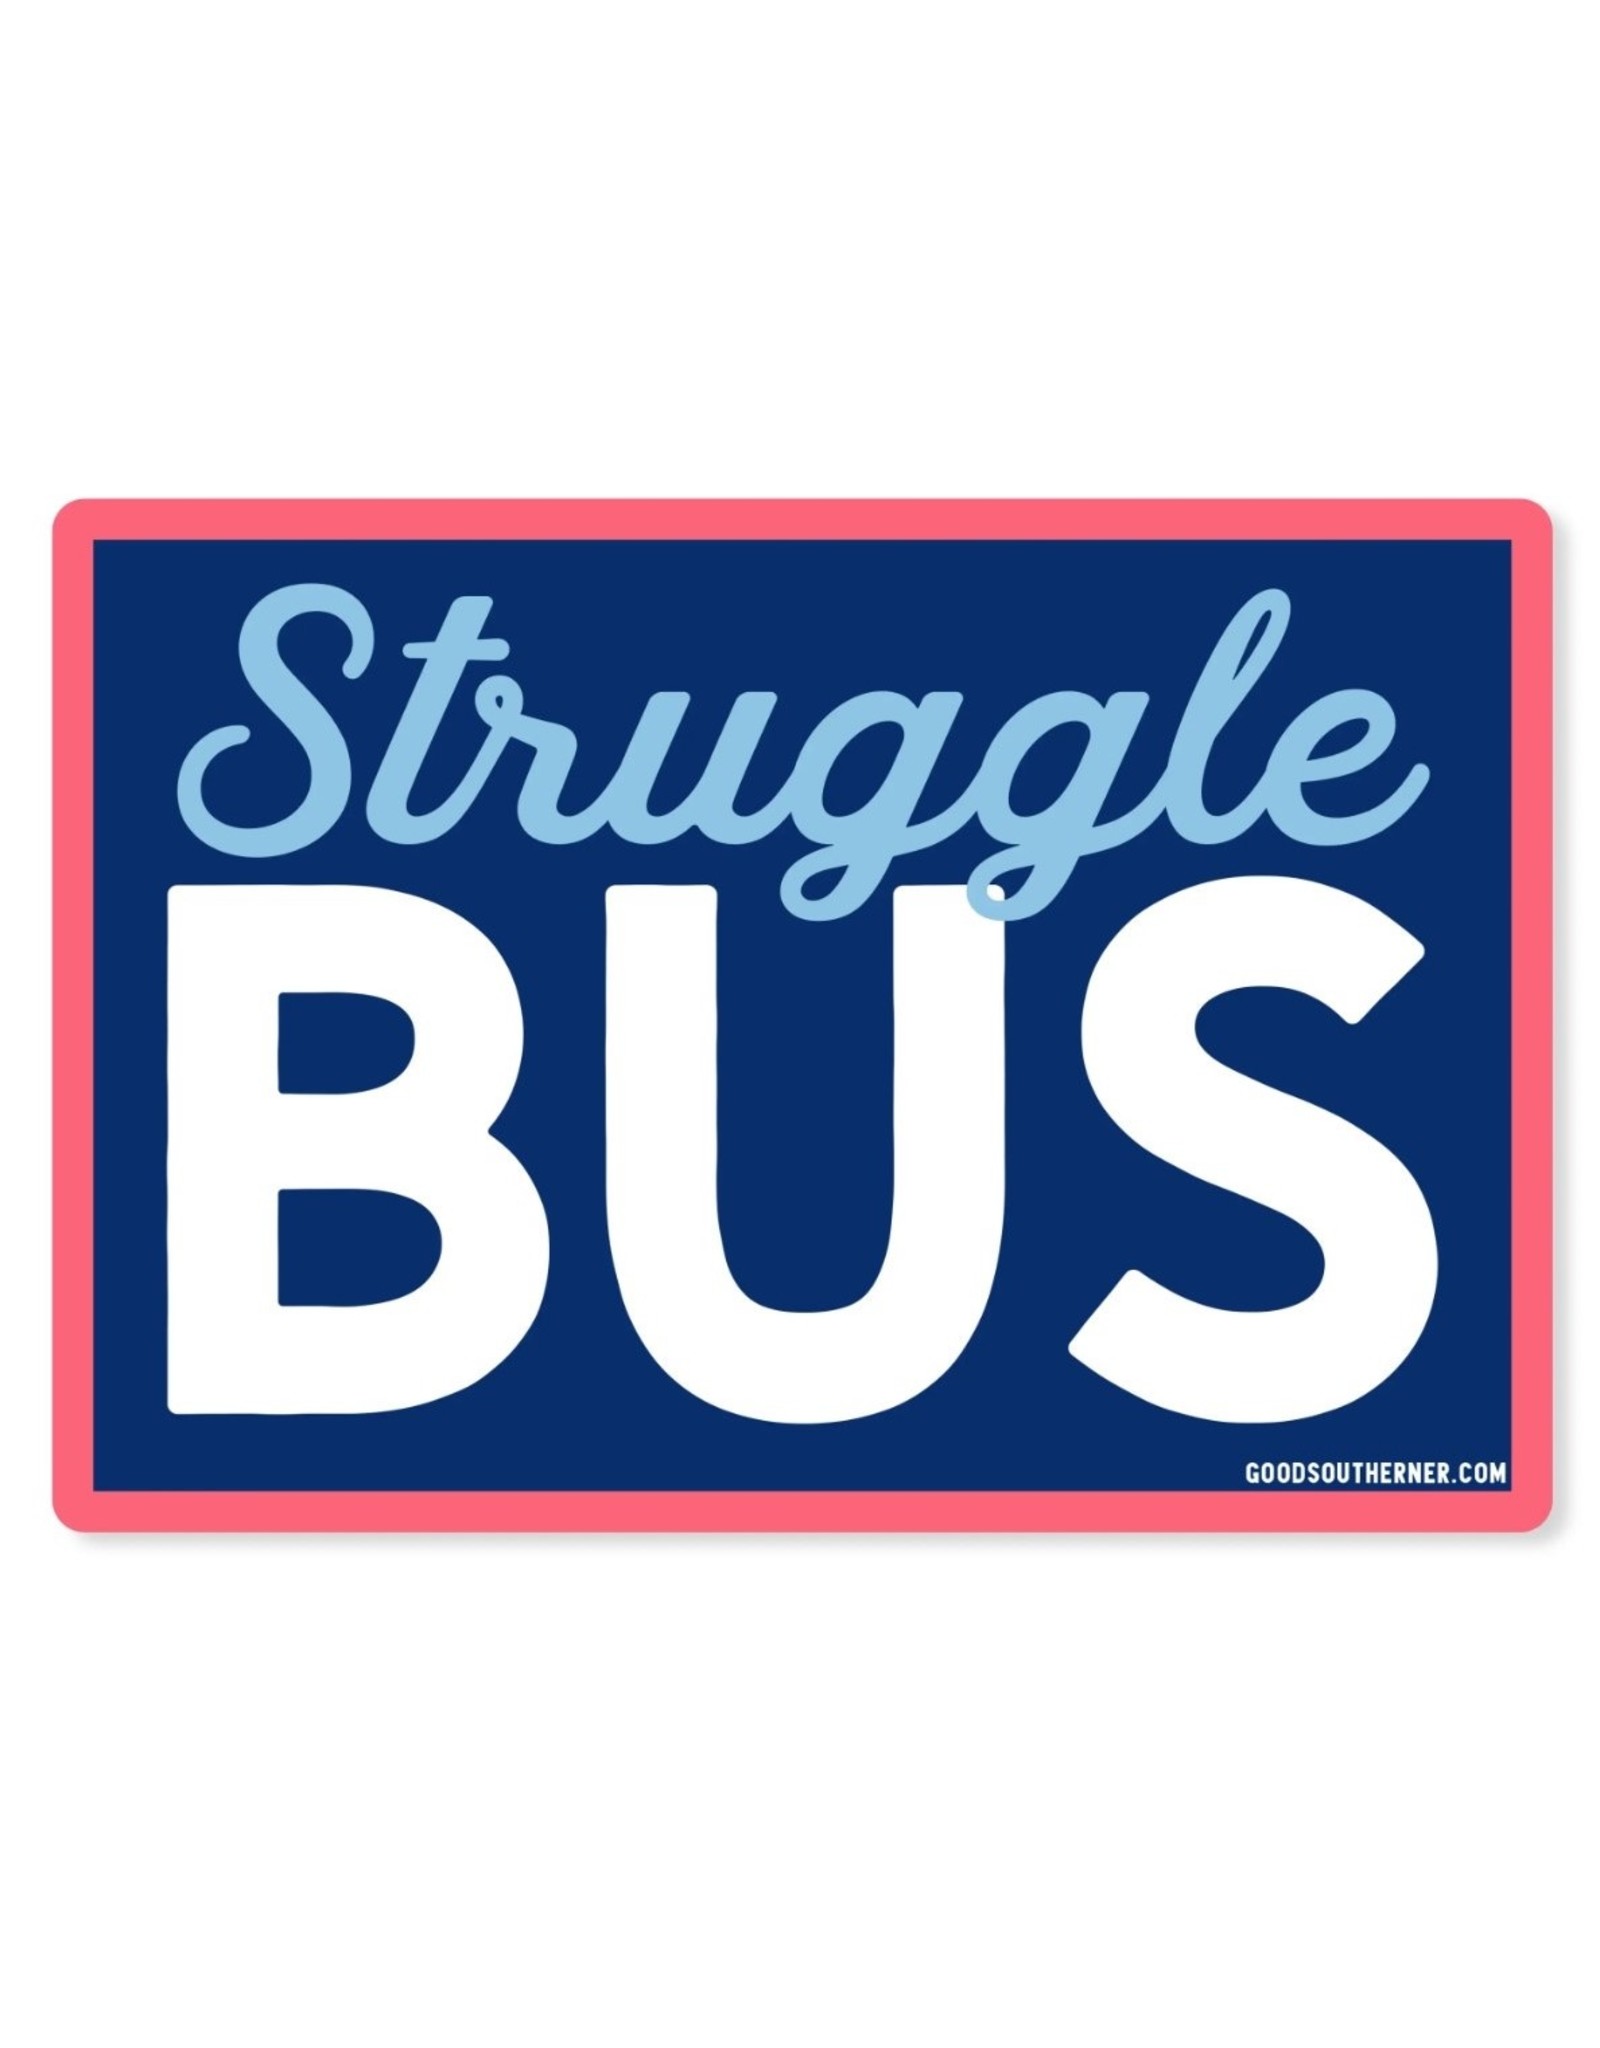 Good southerner Struggle Bus